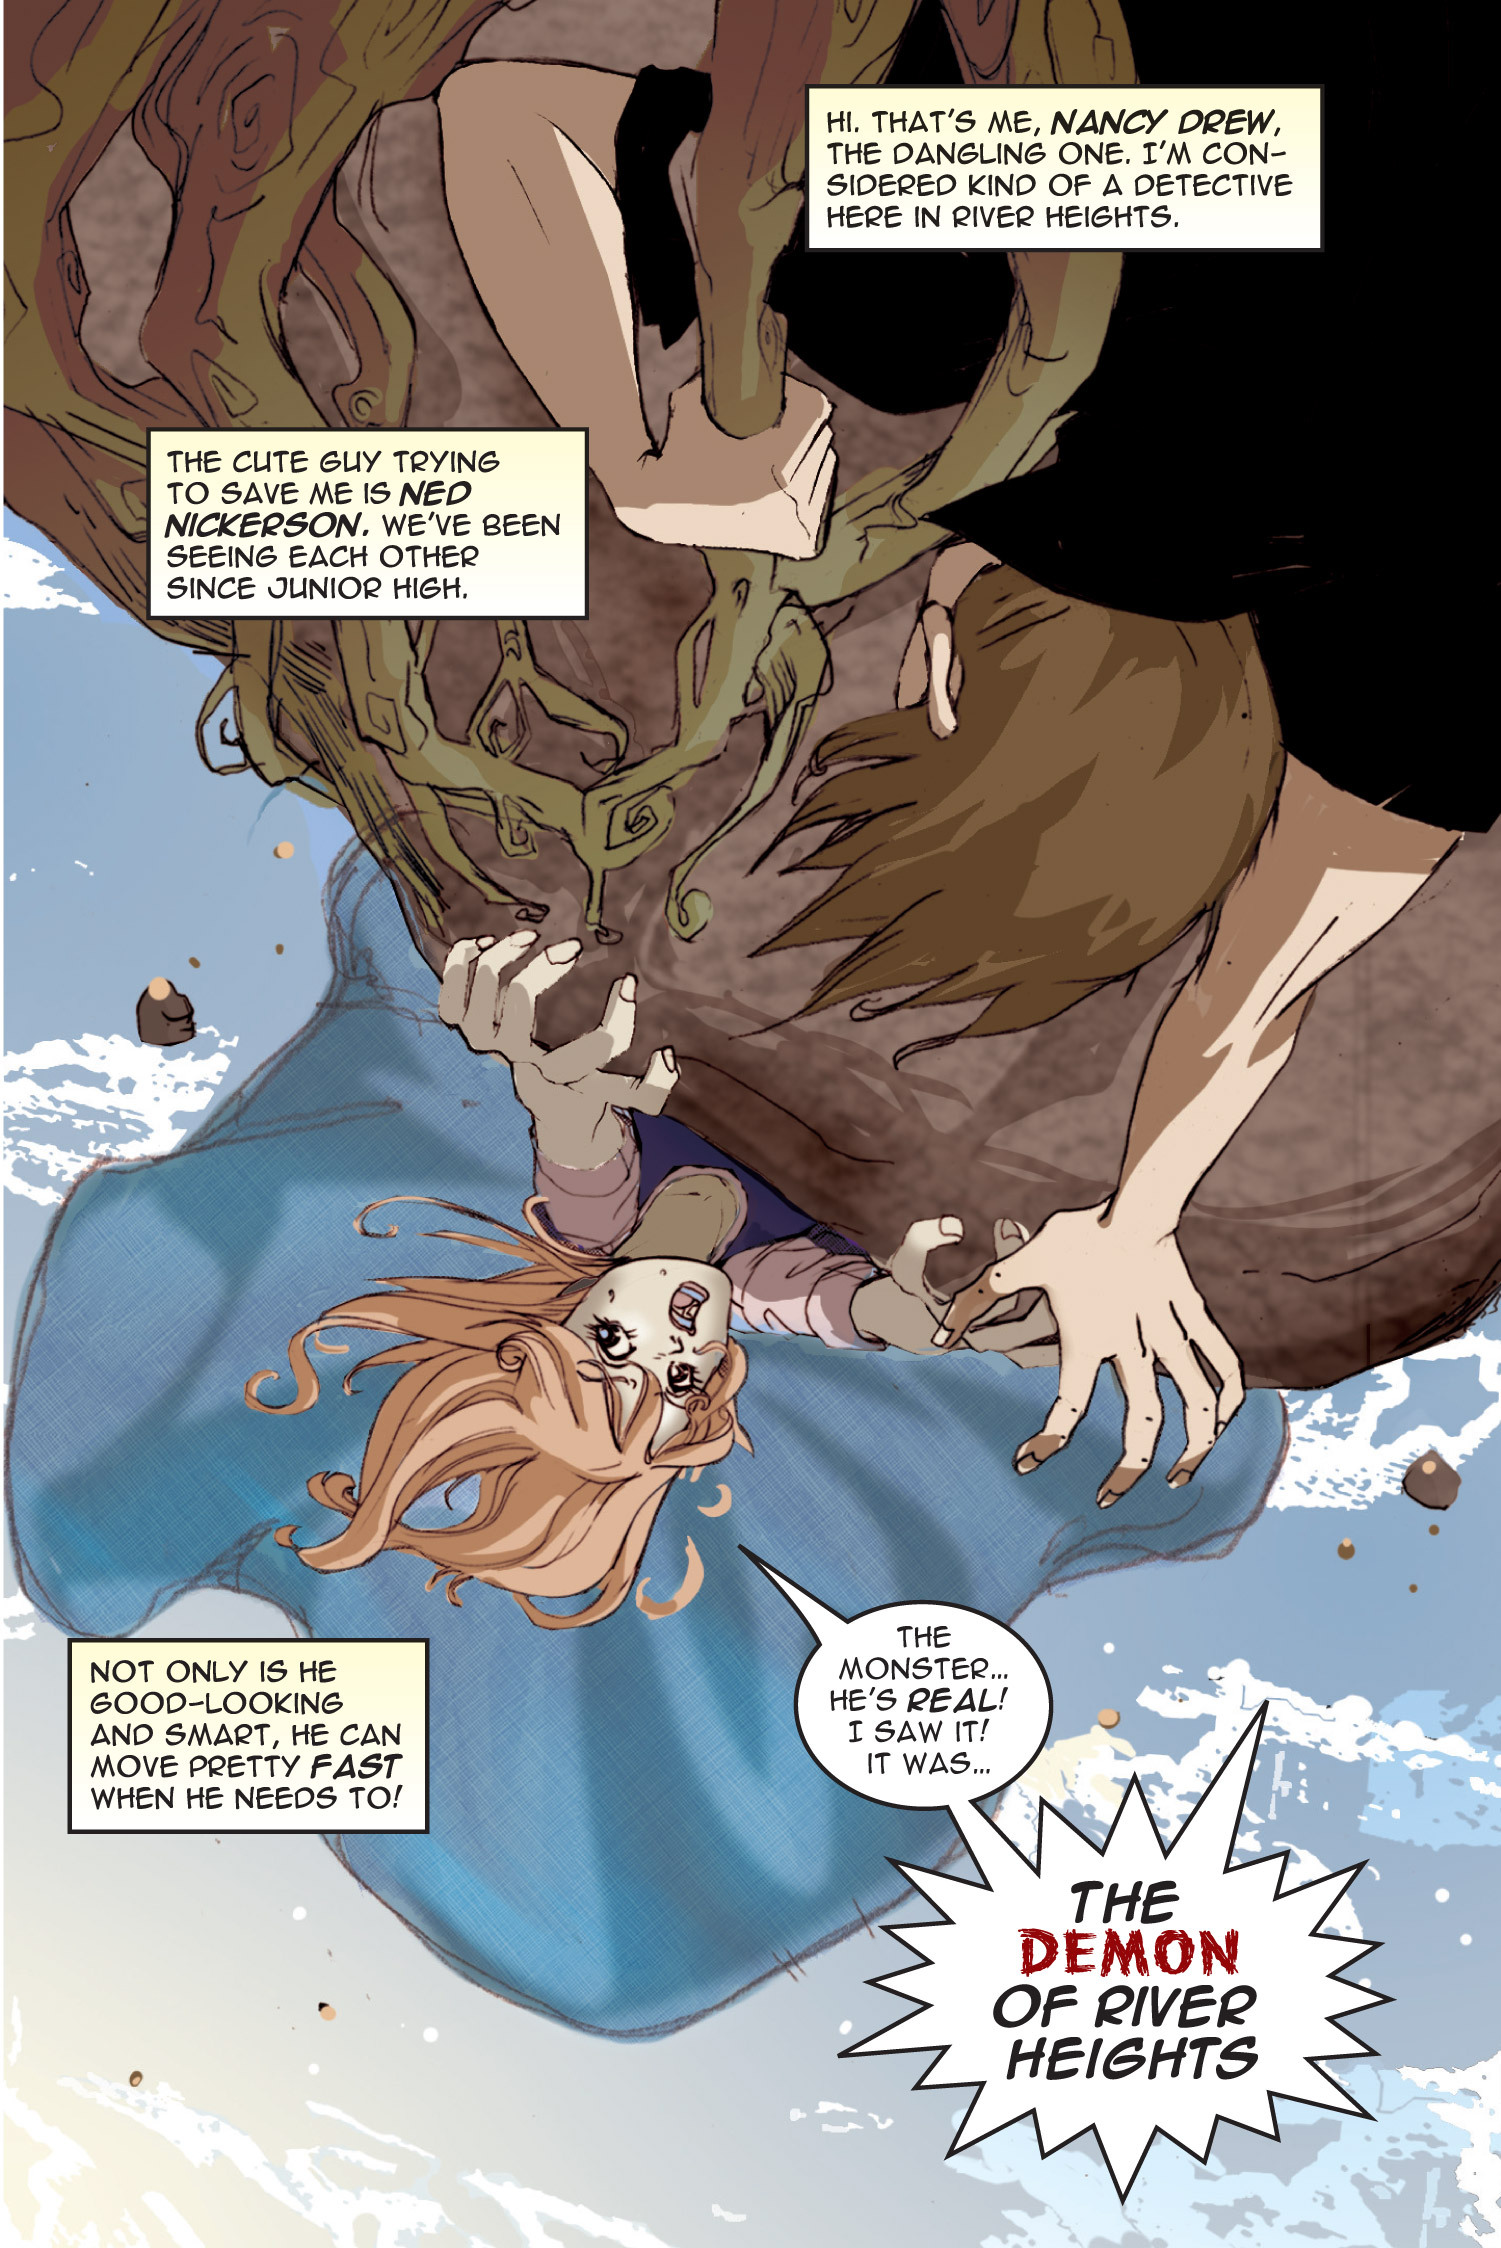 Read online Nancy Drew comic -  Issue #1 - 5